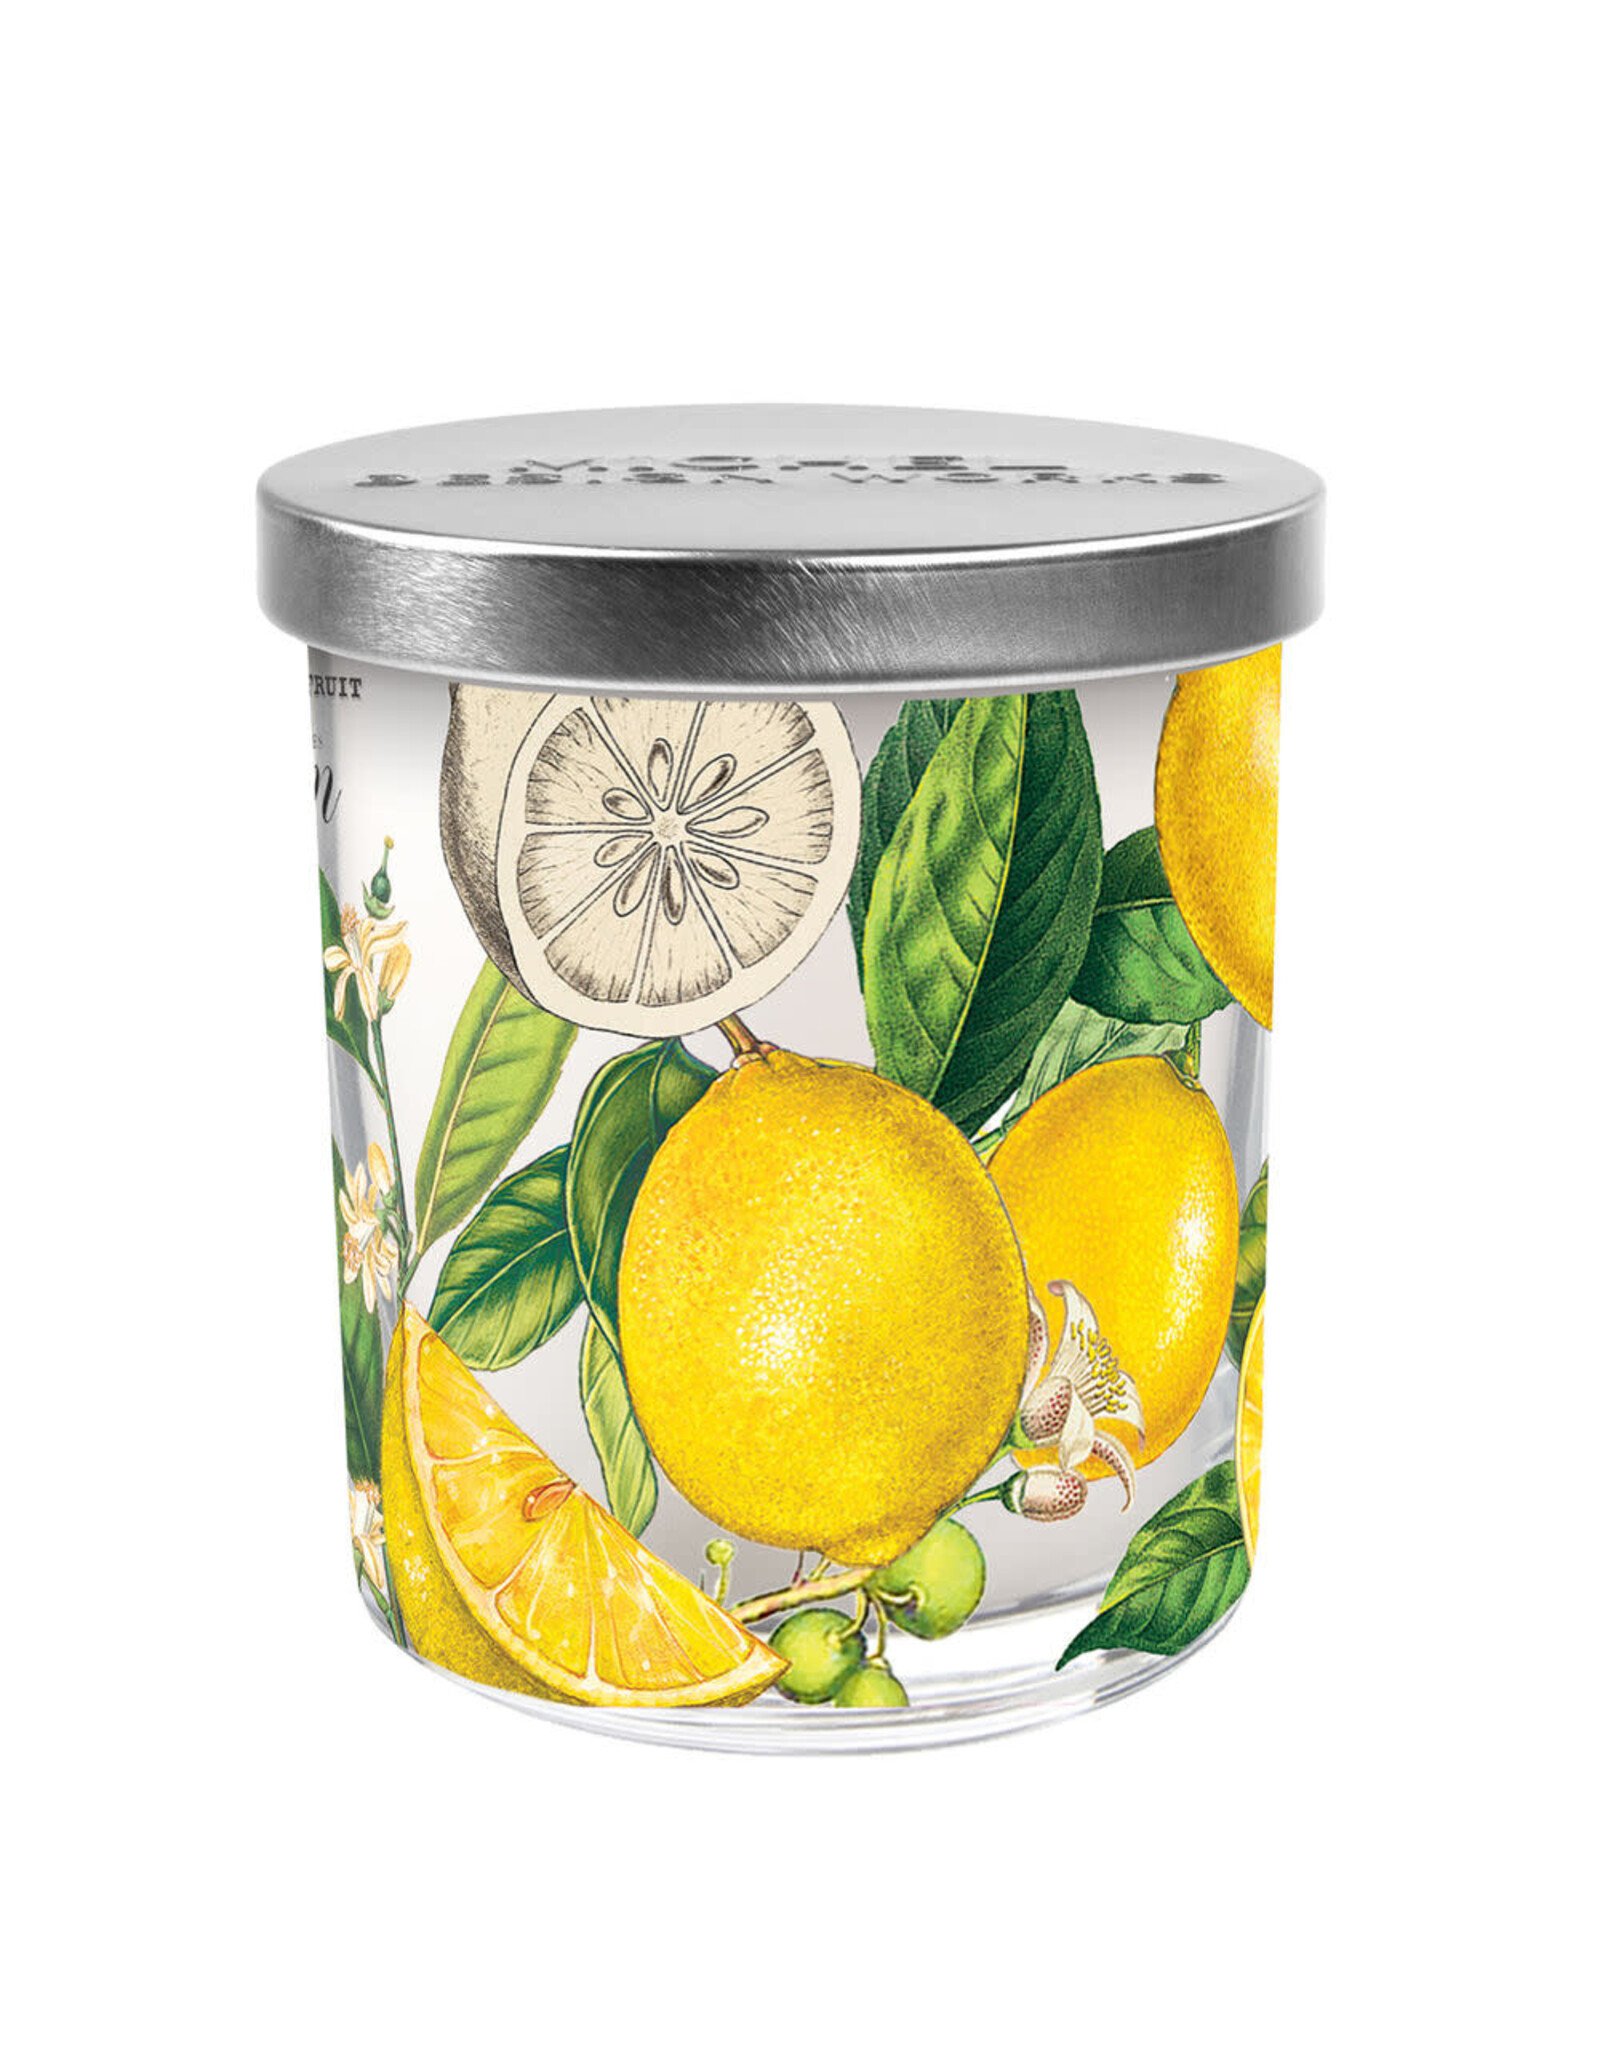 Michel Design Works Lemon Basil Candle Jar with Lid